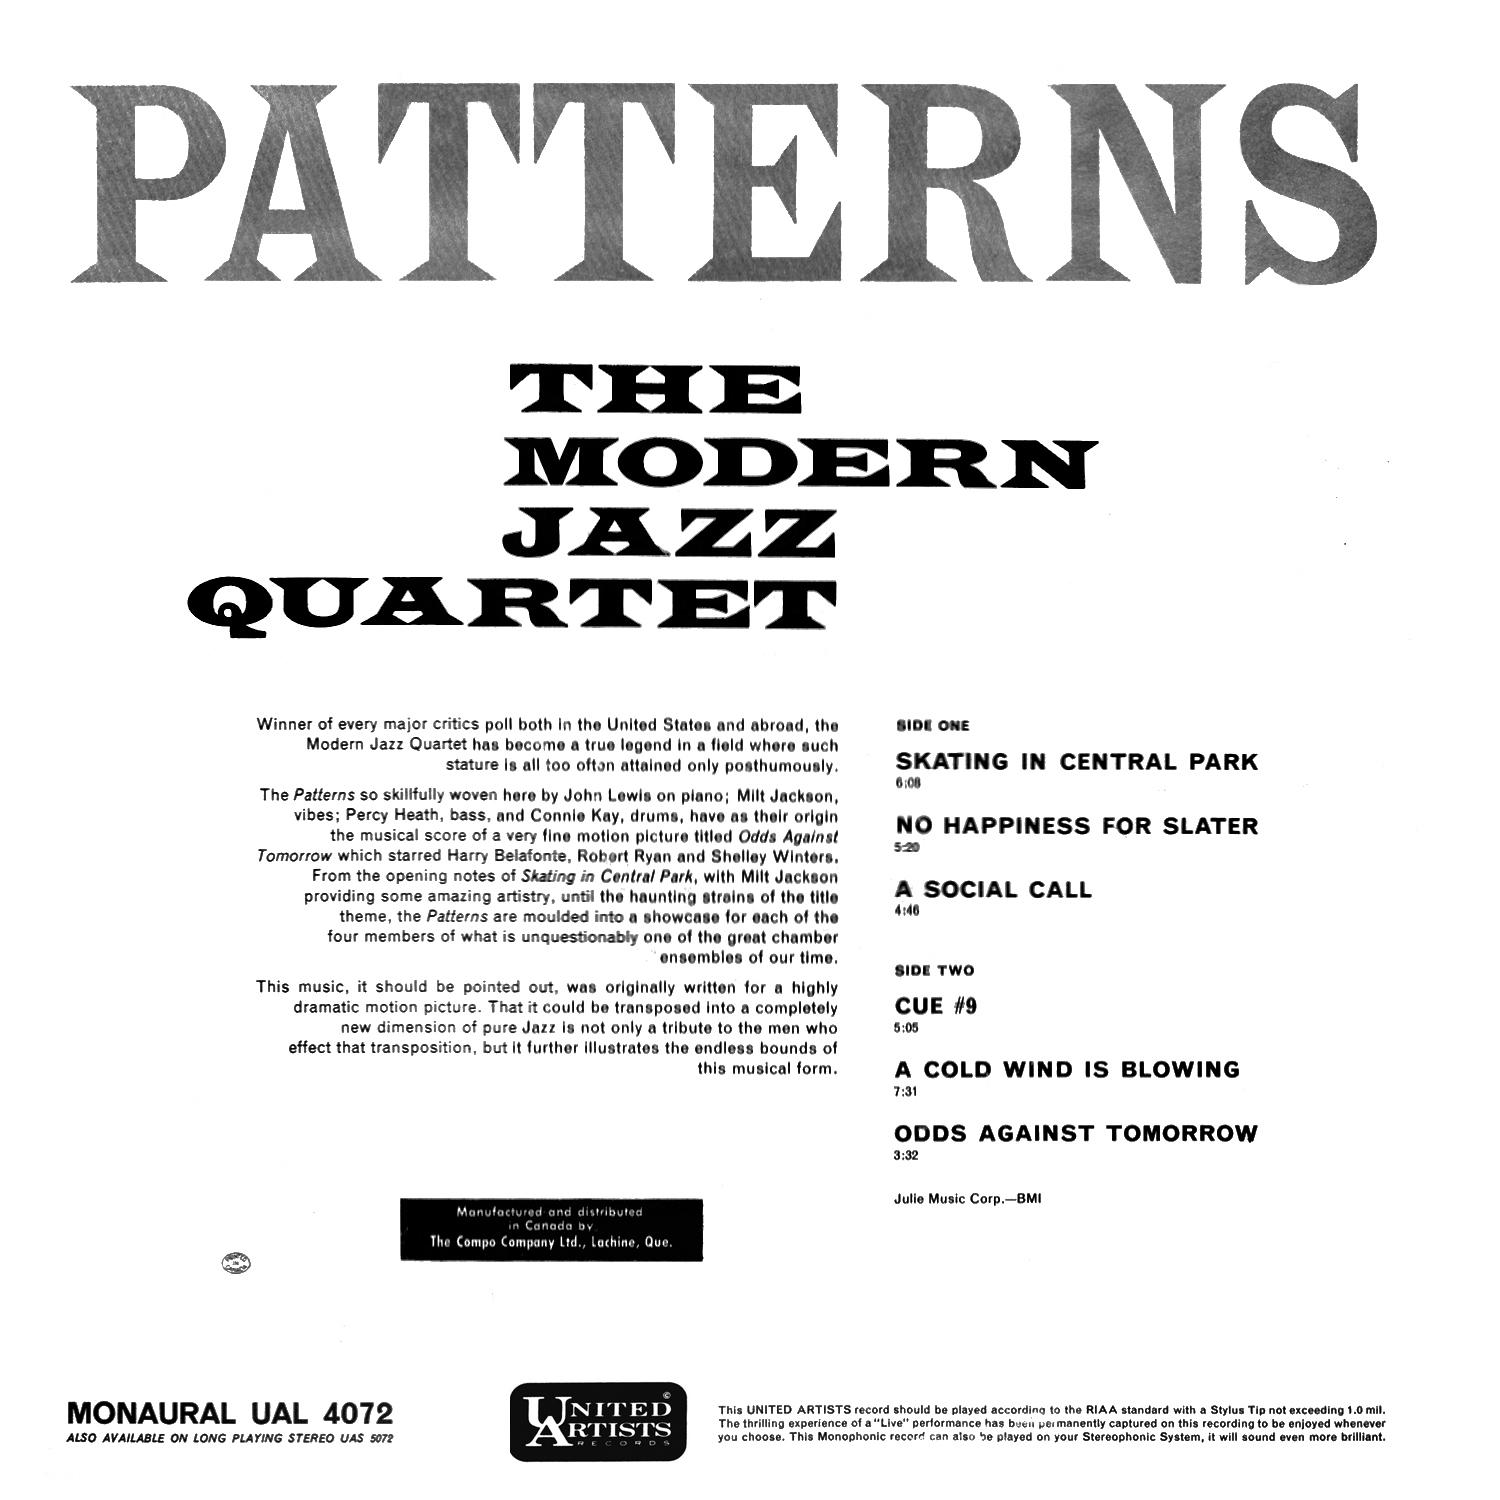 The Modern Jazz Quartet